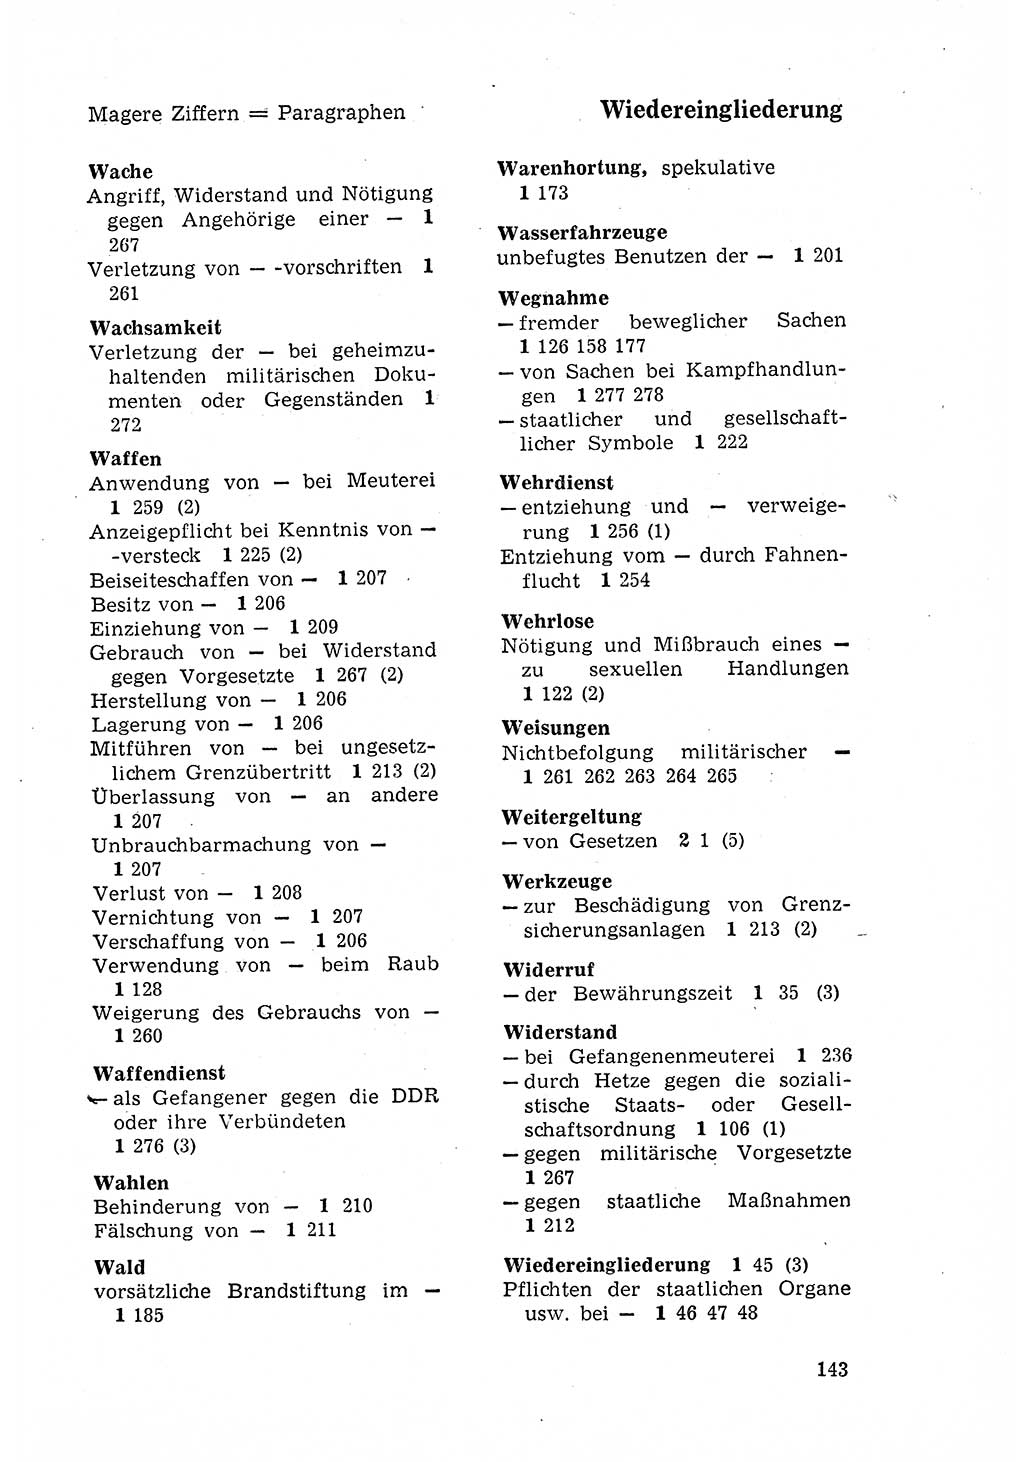 Strafgesetzbuch (StGB) der Deutschen Demokratischen Republik (DDR) 1968, Seite 143 (StGB DDR 1968, S. 143)